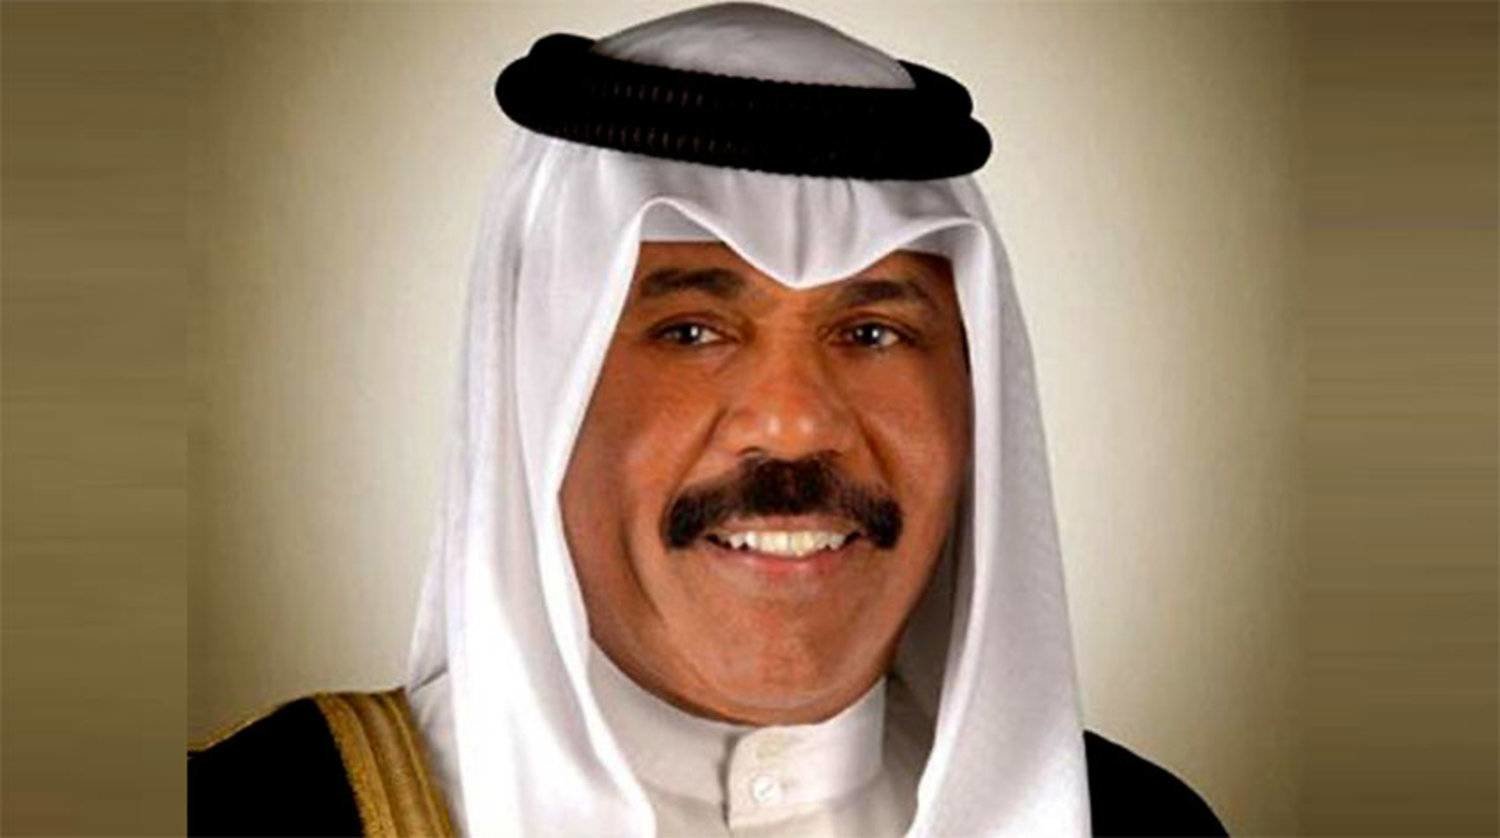 وفاة أمير دولة الكويت